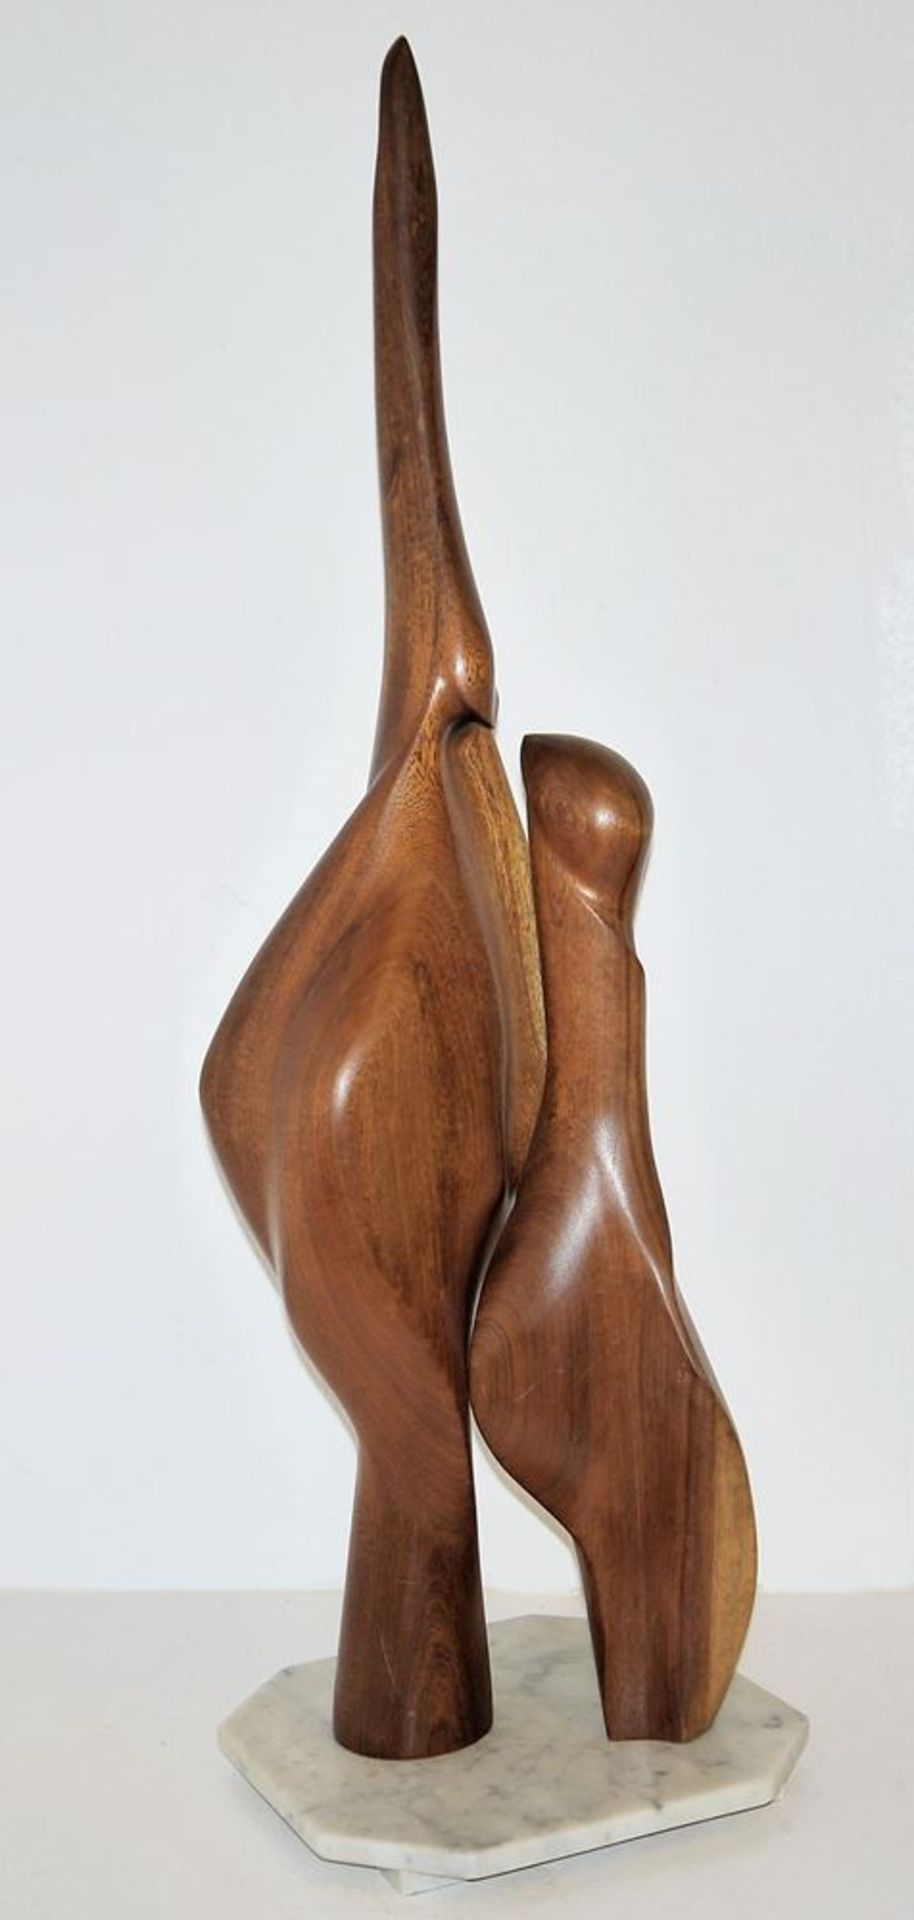 Ralph Gorgis, Form VIII 1, wooden sculpture from 1984